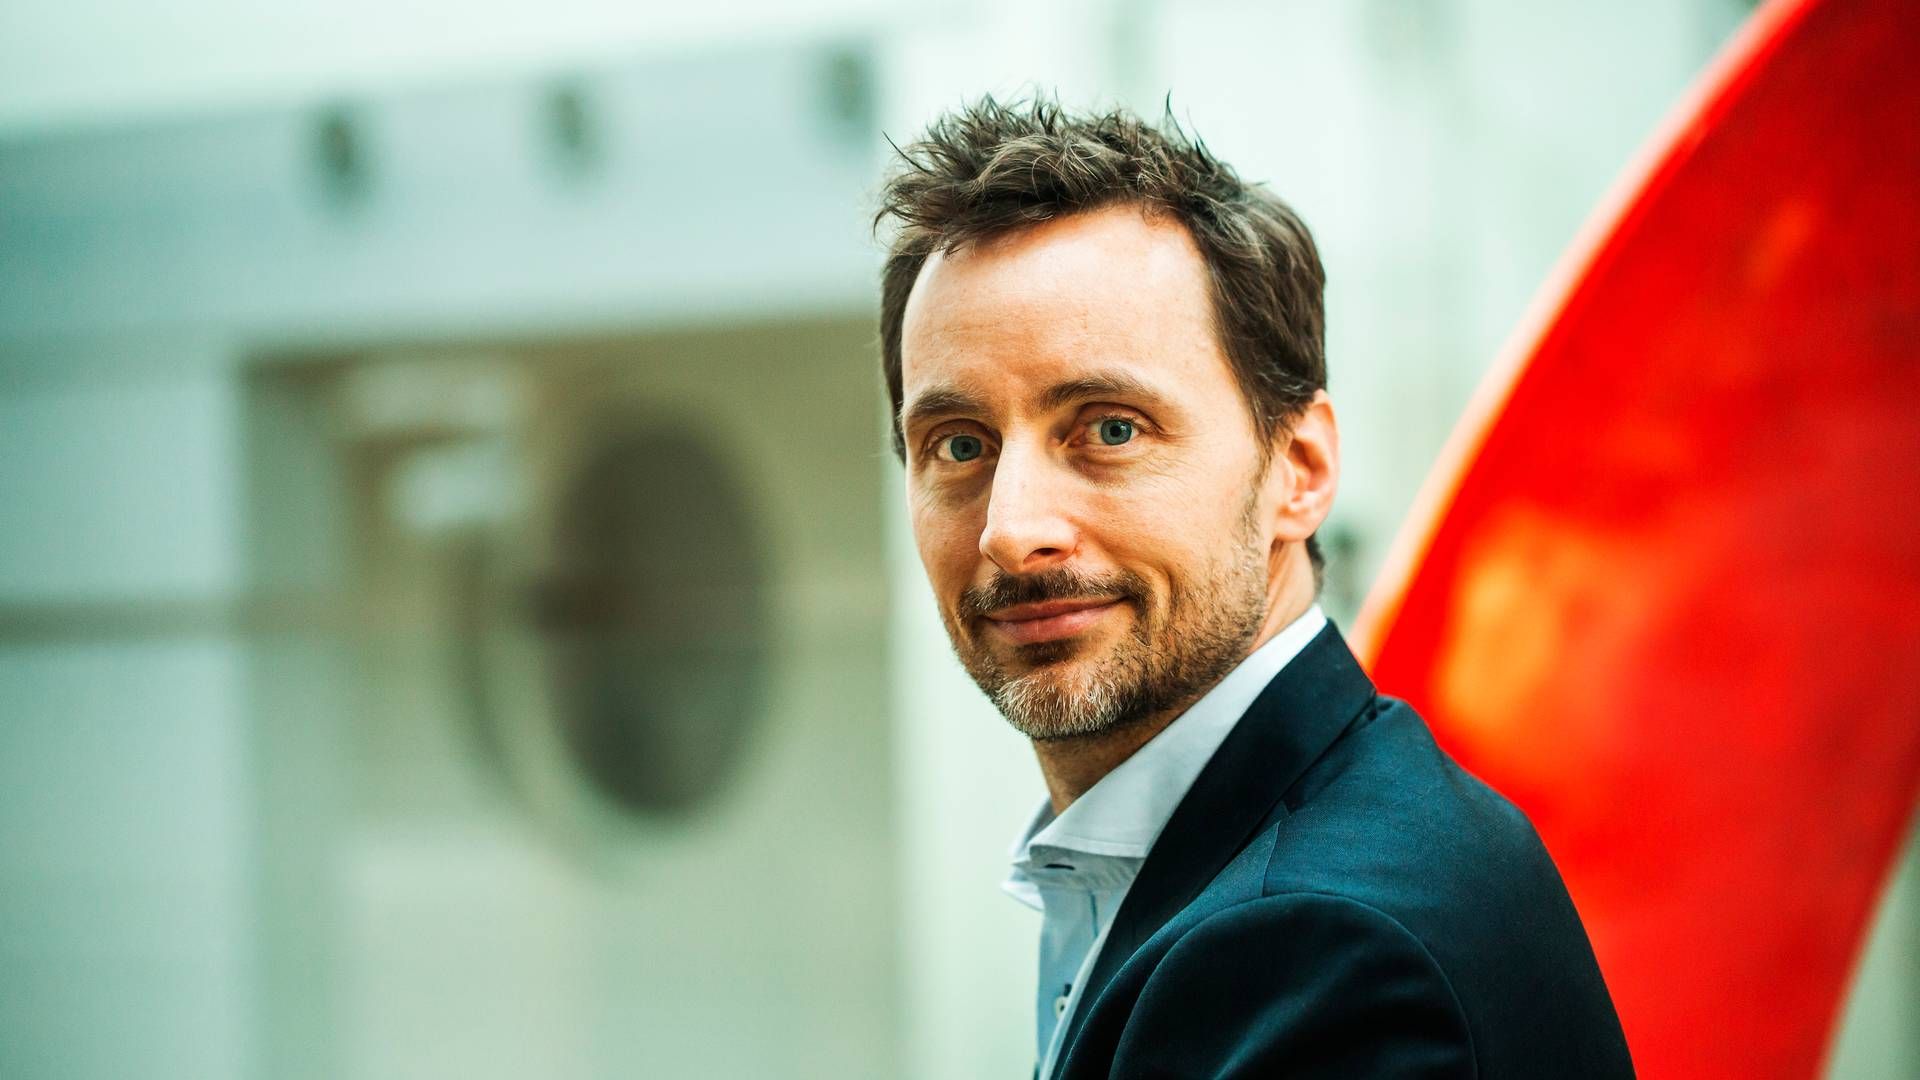 Kommerciel koncerndirektør Johan Kirstein Brammer er kommende koncernchef for Tryg. | Foto: Pr/tryg